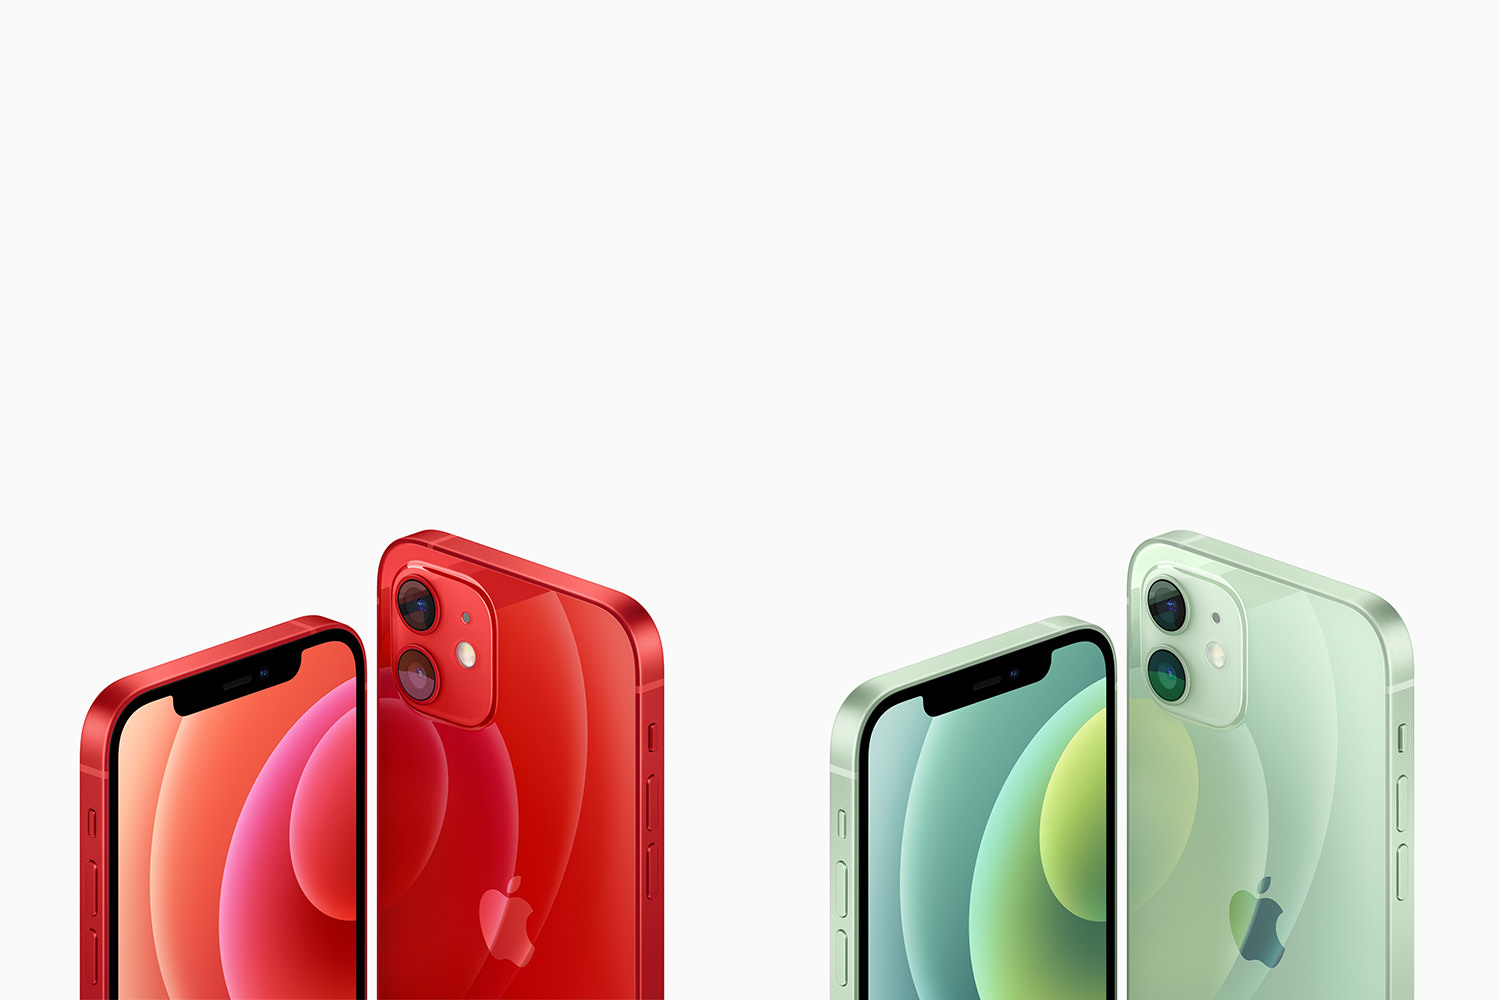 نمای پشت و جلو آیفون ۱۲ مینی و iPhone 12 اپل رنگ سبز و قرمز